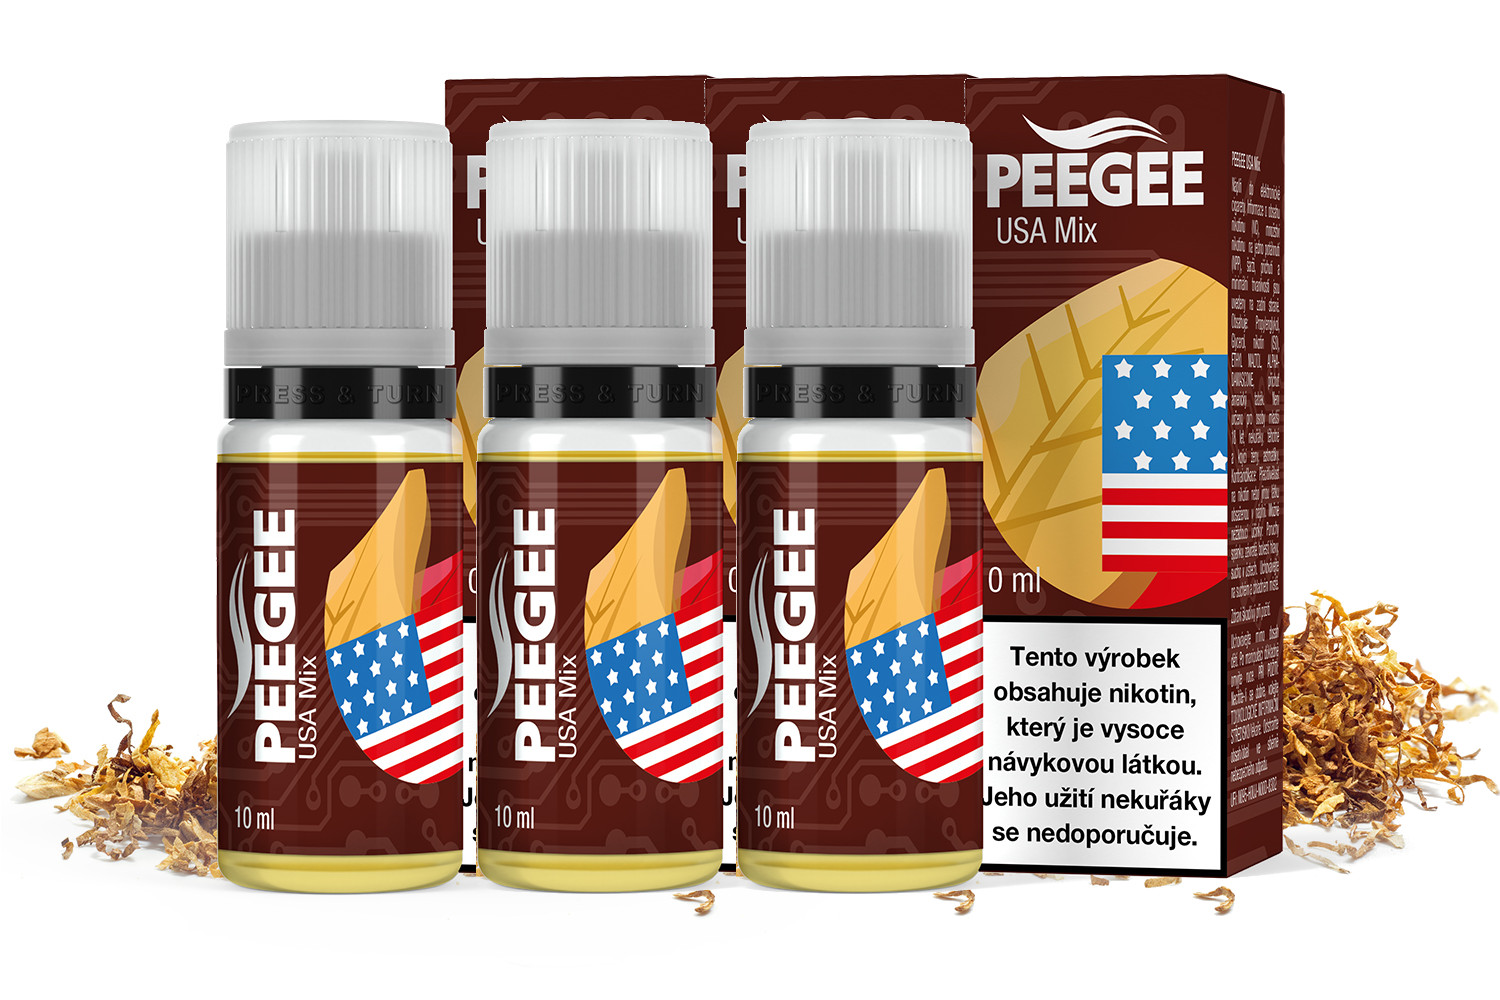 PEEGEE - Usa Mix 3x10ml Obsah nikotinu: 6mg